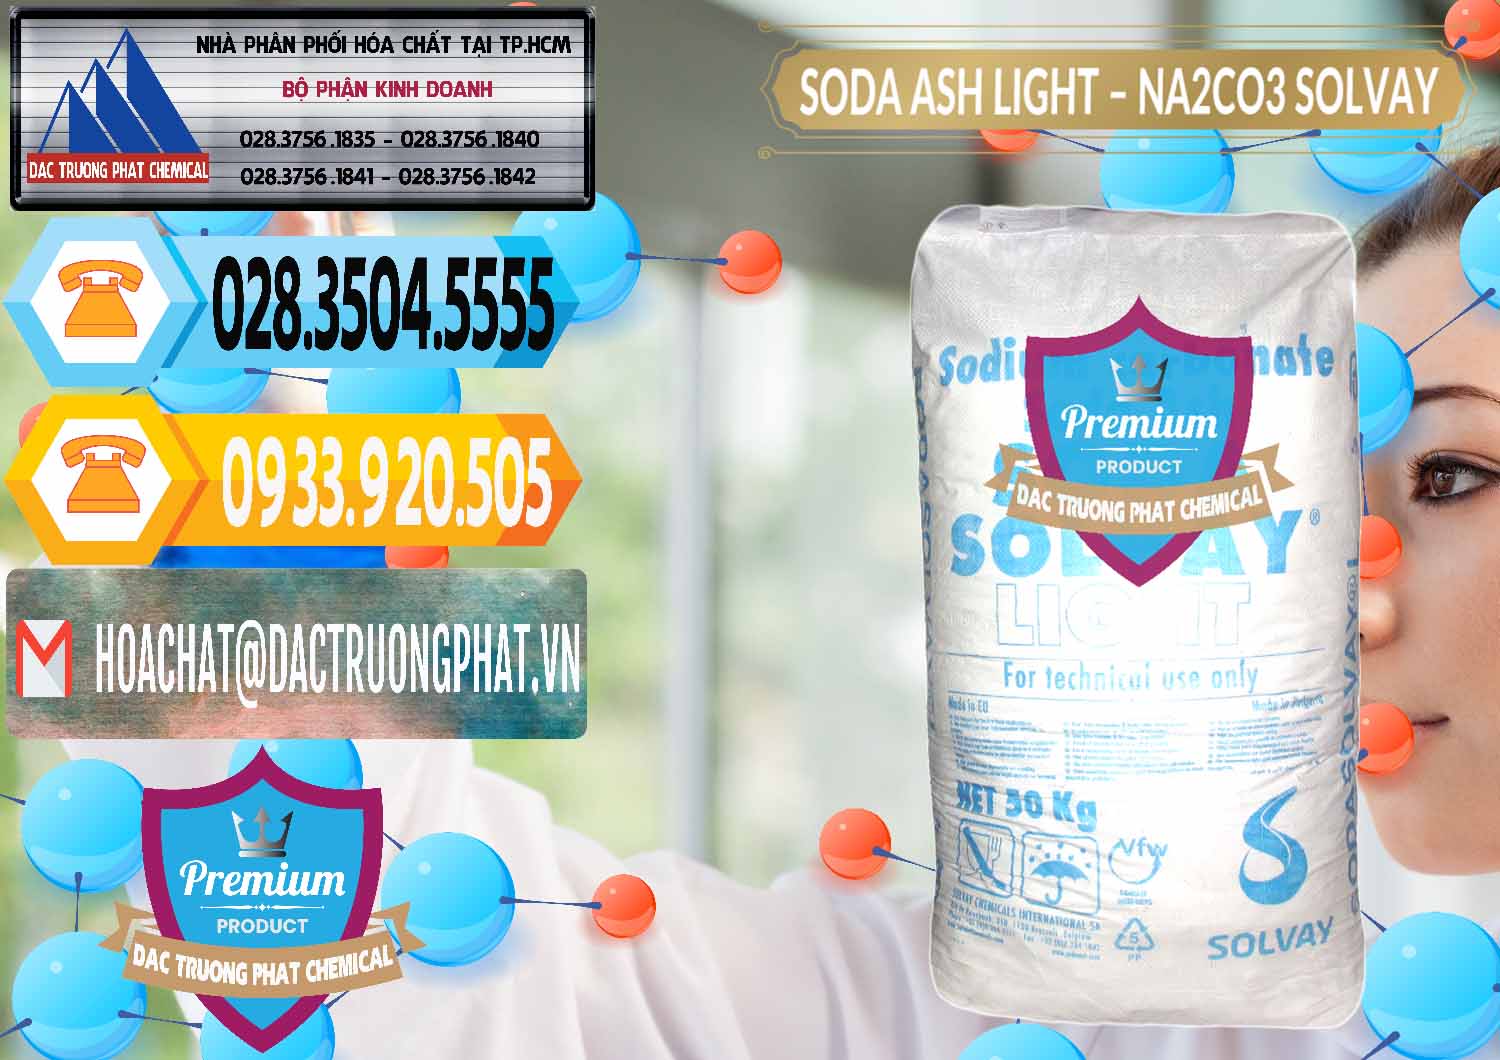 Kinh doanh & bán Soda Ash Light - NA2CO3 Solvay Bulgaria - 0126 - Kinh doanh & cung cấp hóa chất tại TP.HCM - hoachattayrua.net